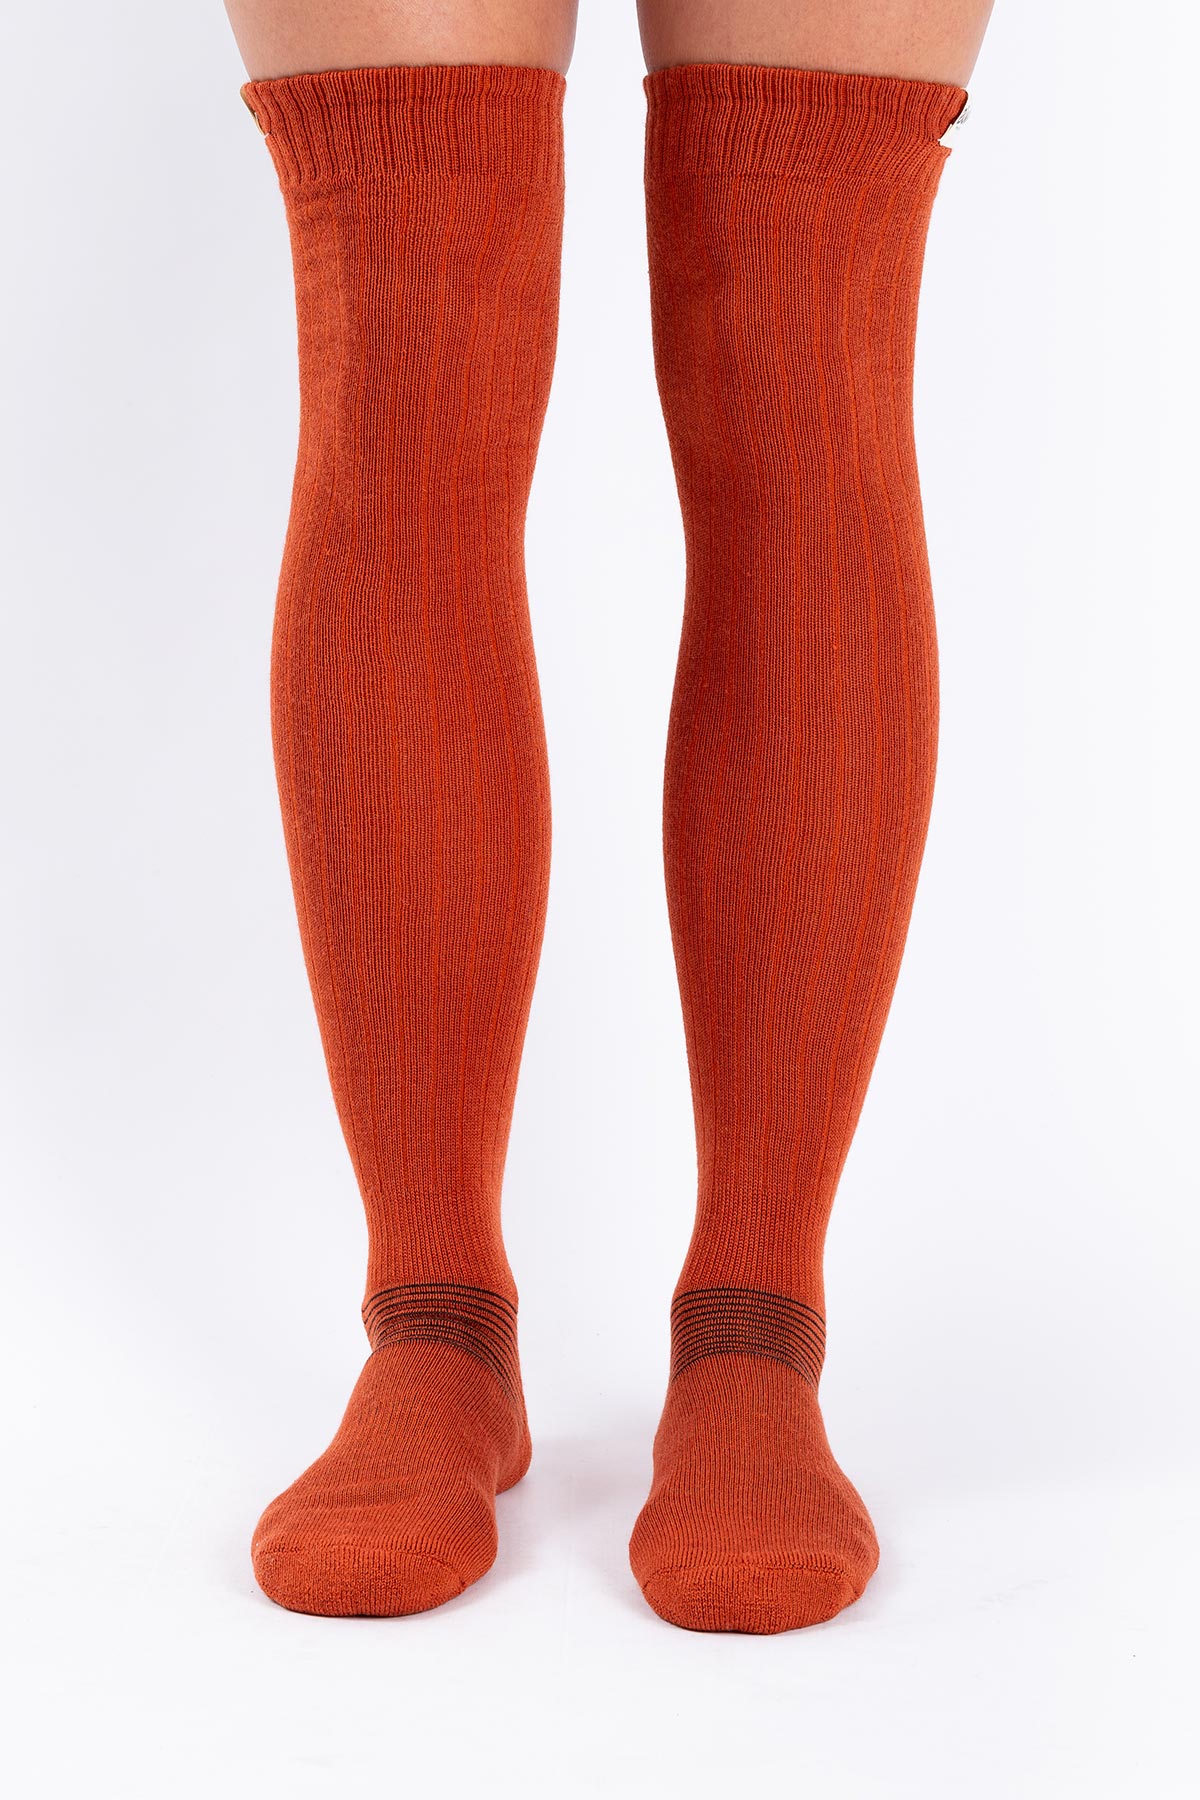 Socks | Rib High Wool - Rustic | 39-41